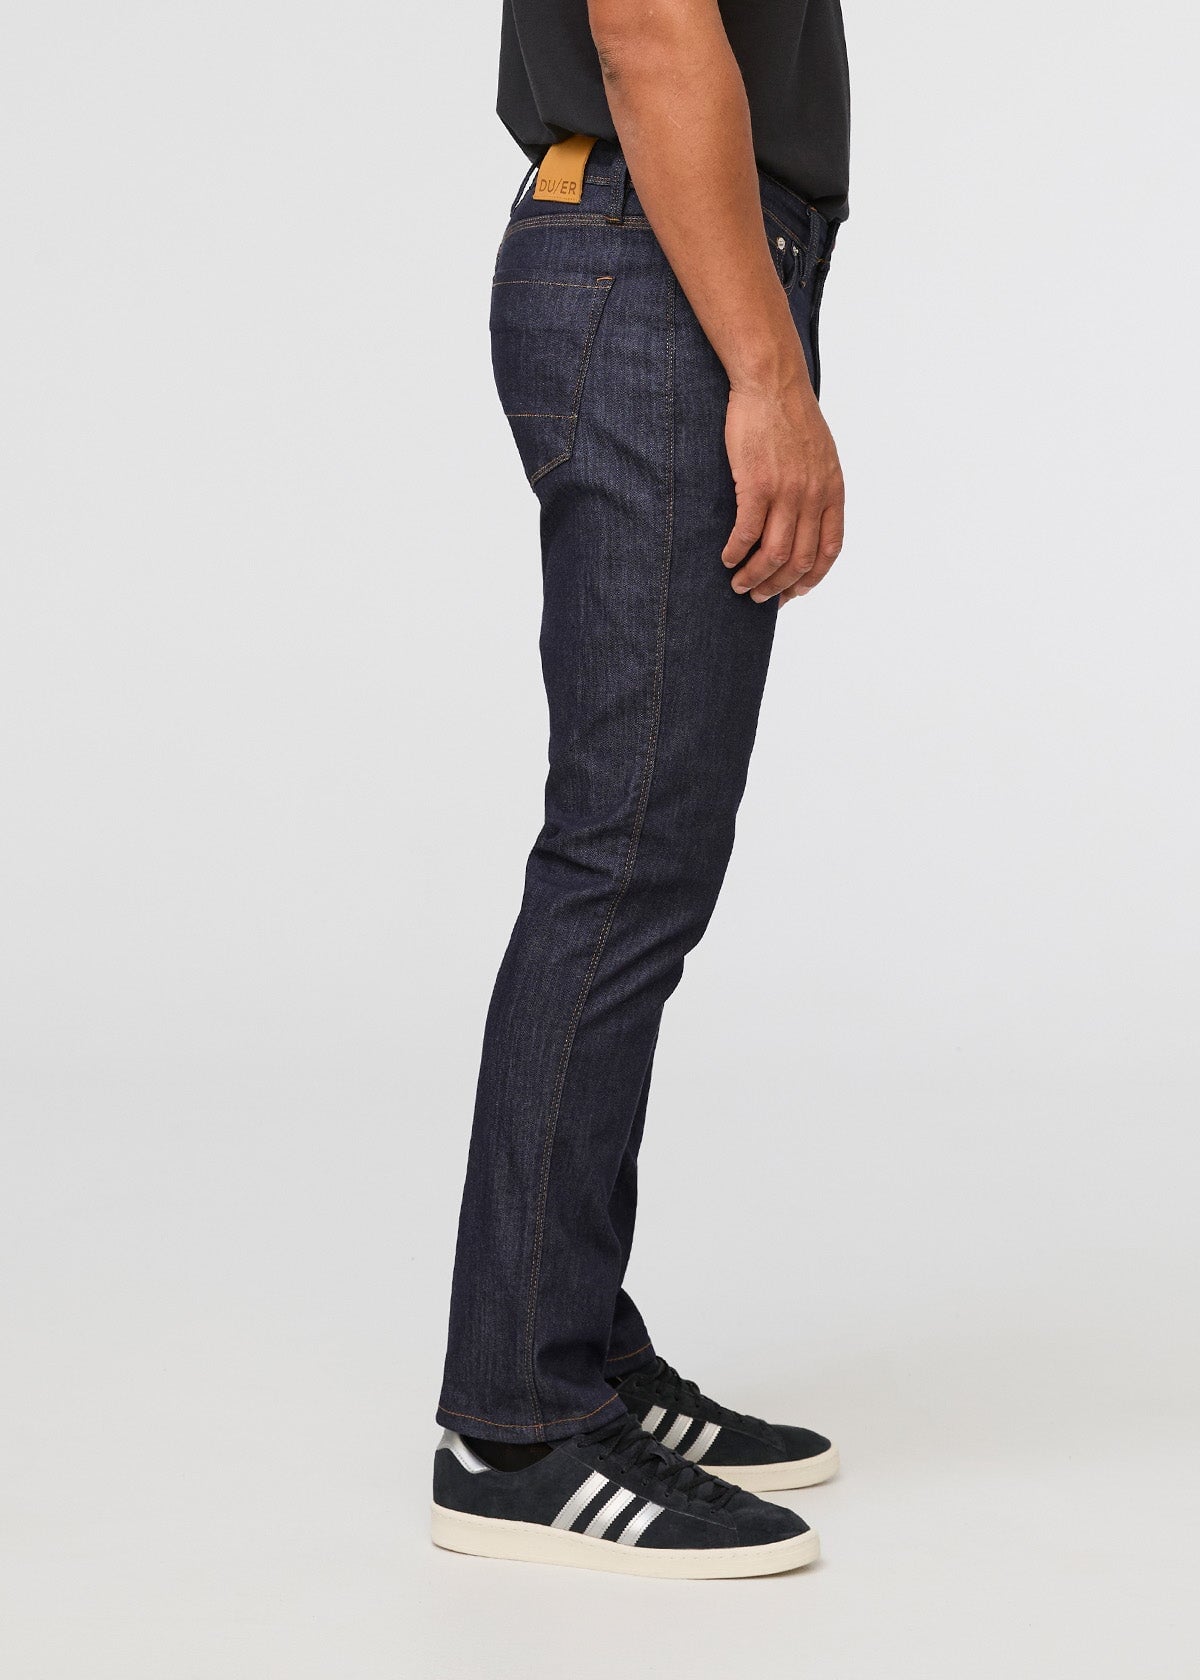 Mens Gap Soft Wear Slim Taper Blue Jeans 29 X 32